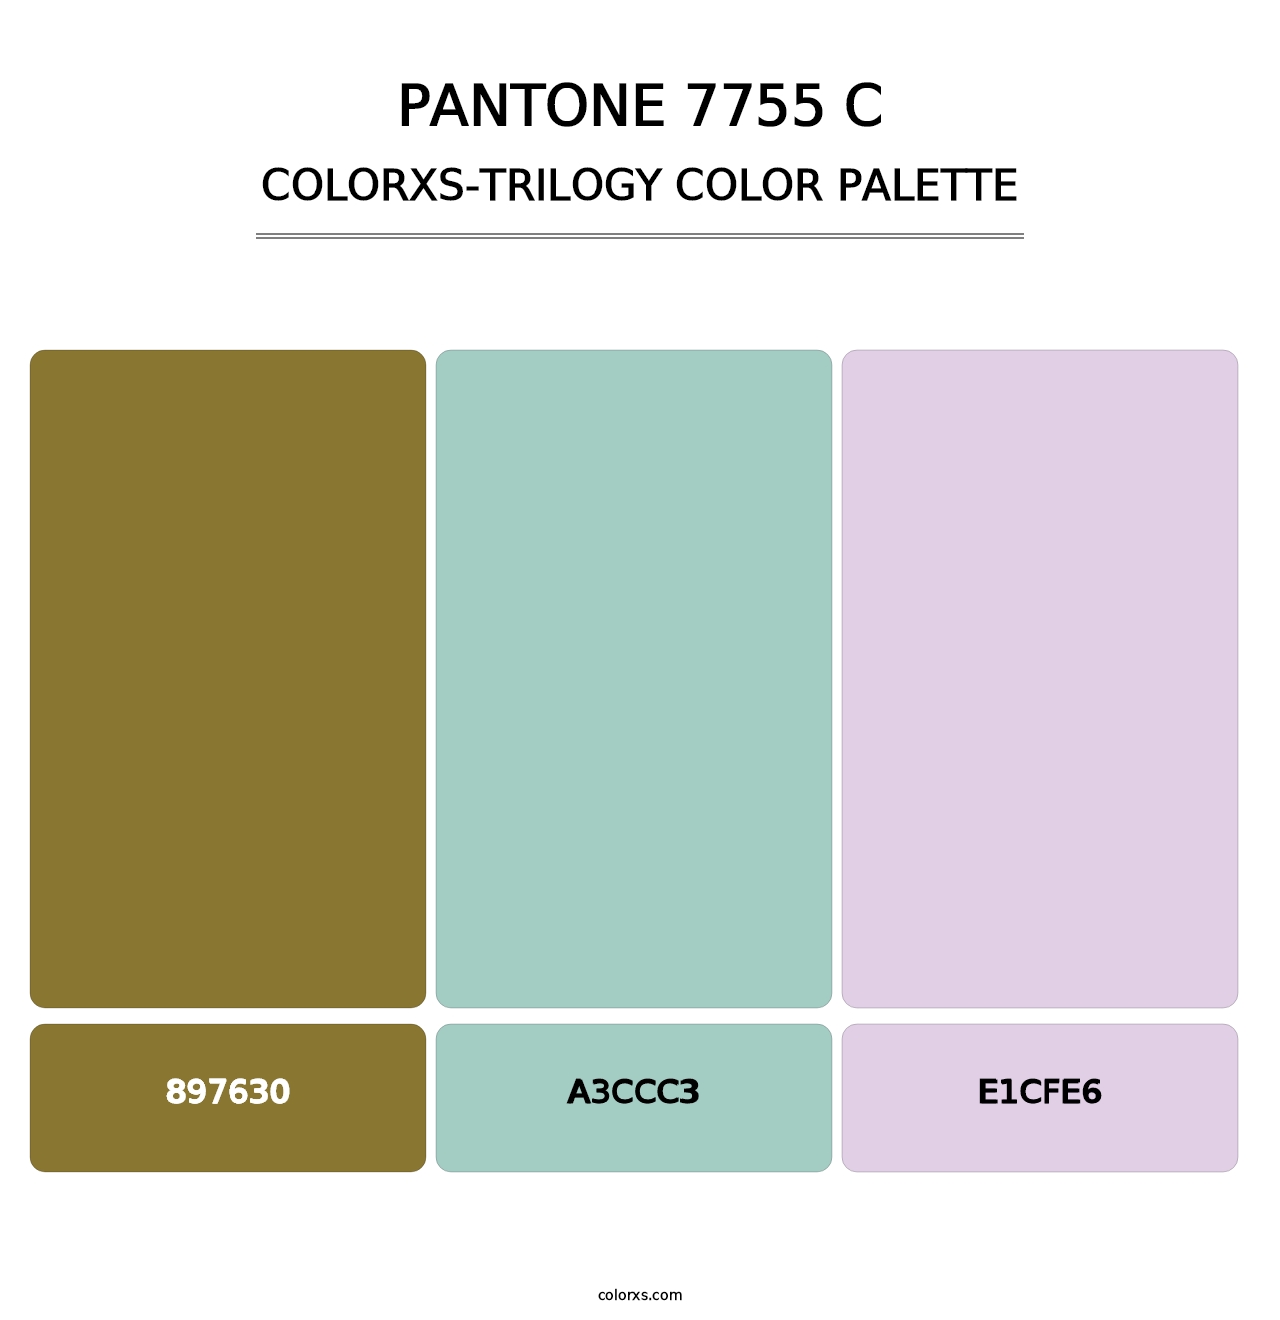 PANTONE 7755 C - Colorxs Trilogy Palette